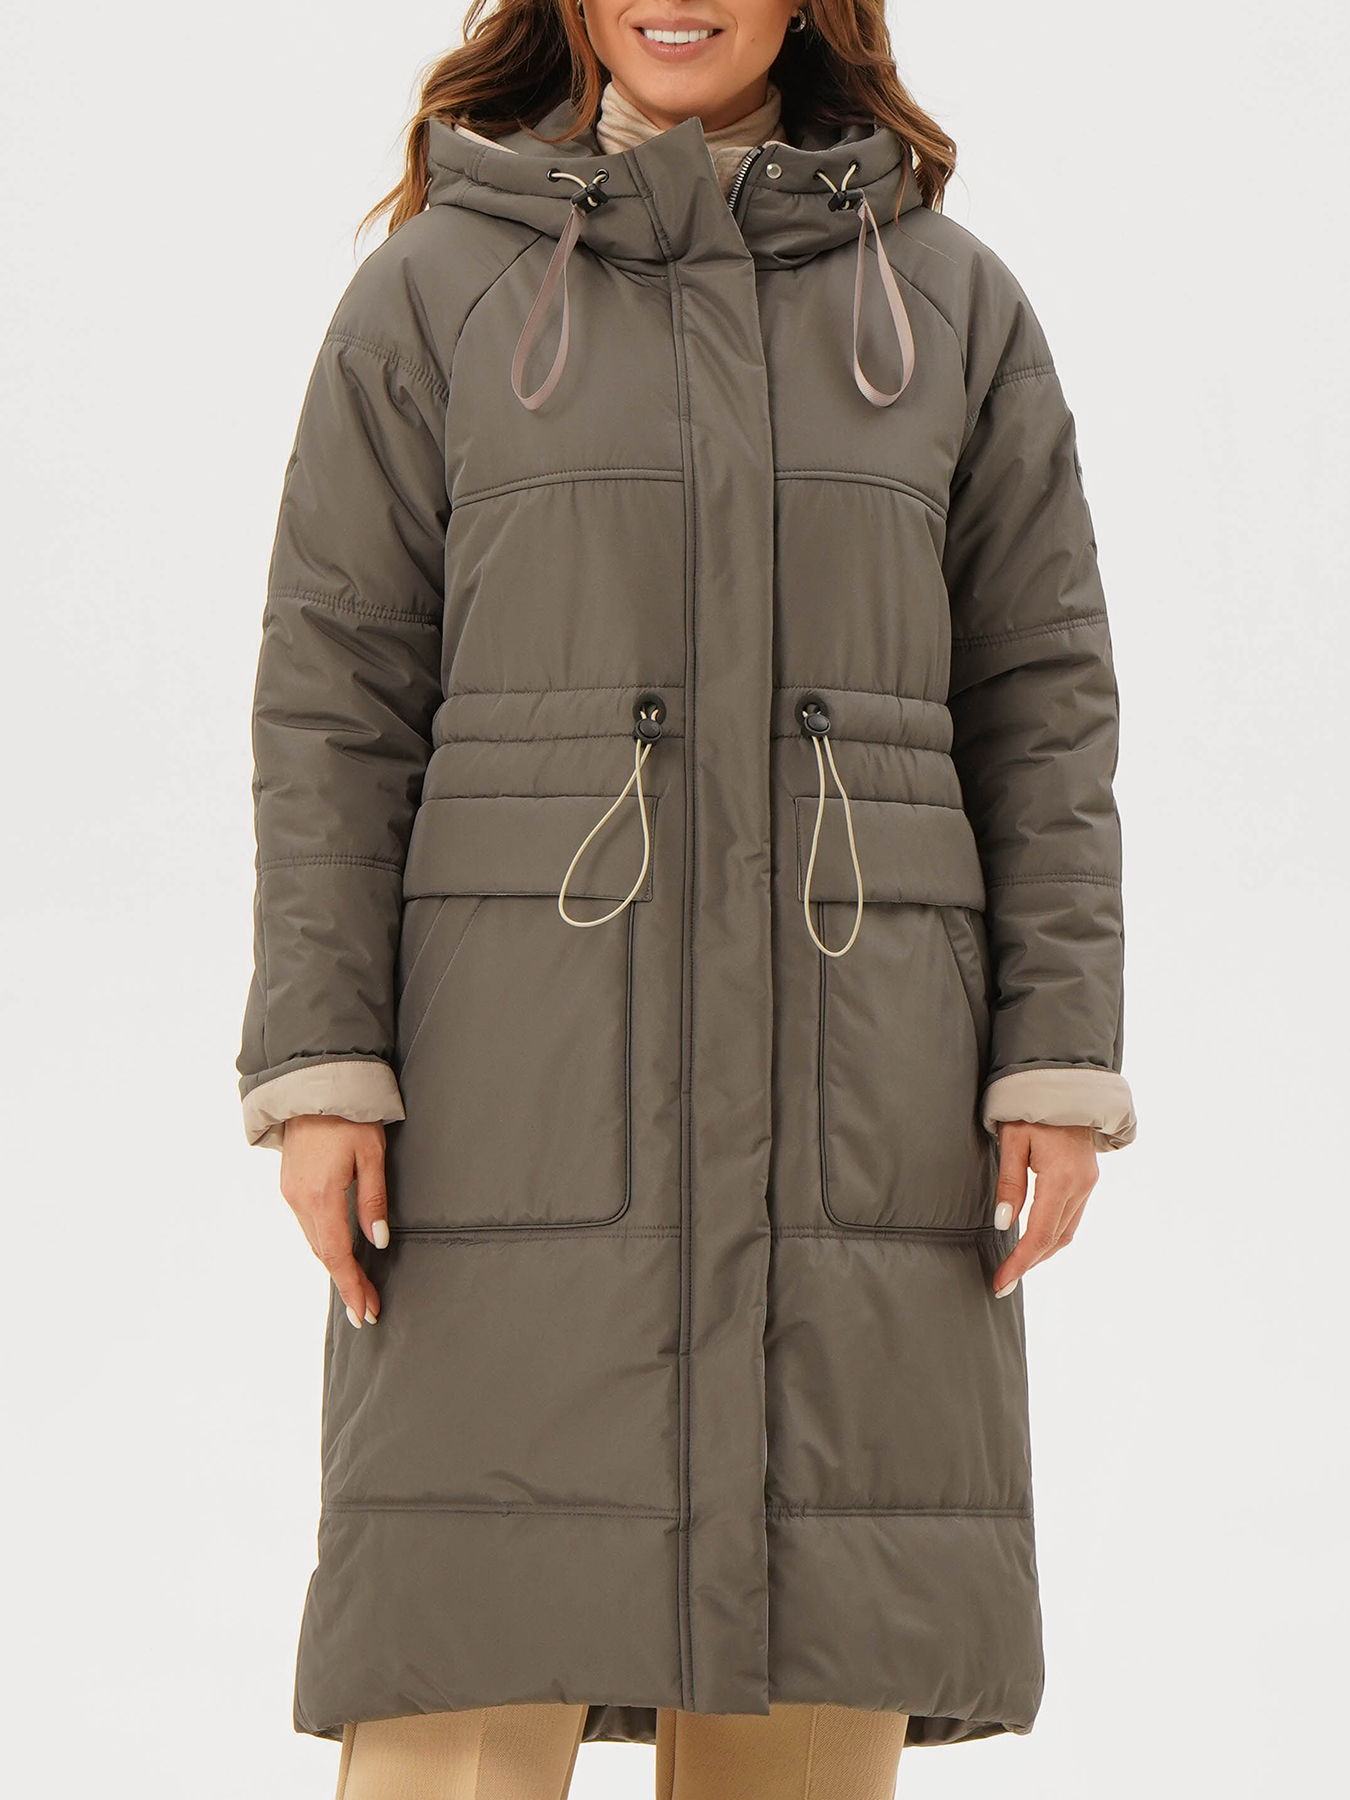 Пальто зимнее Maritta 433583-023, цвет хаки, размер 50